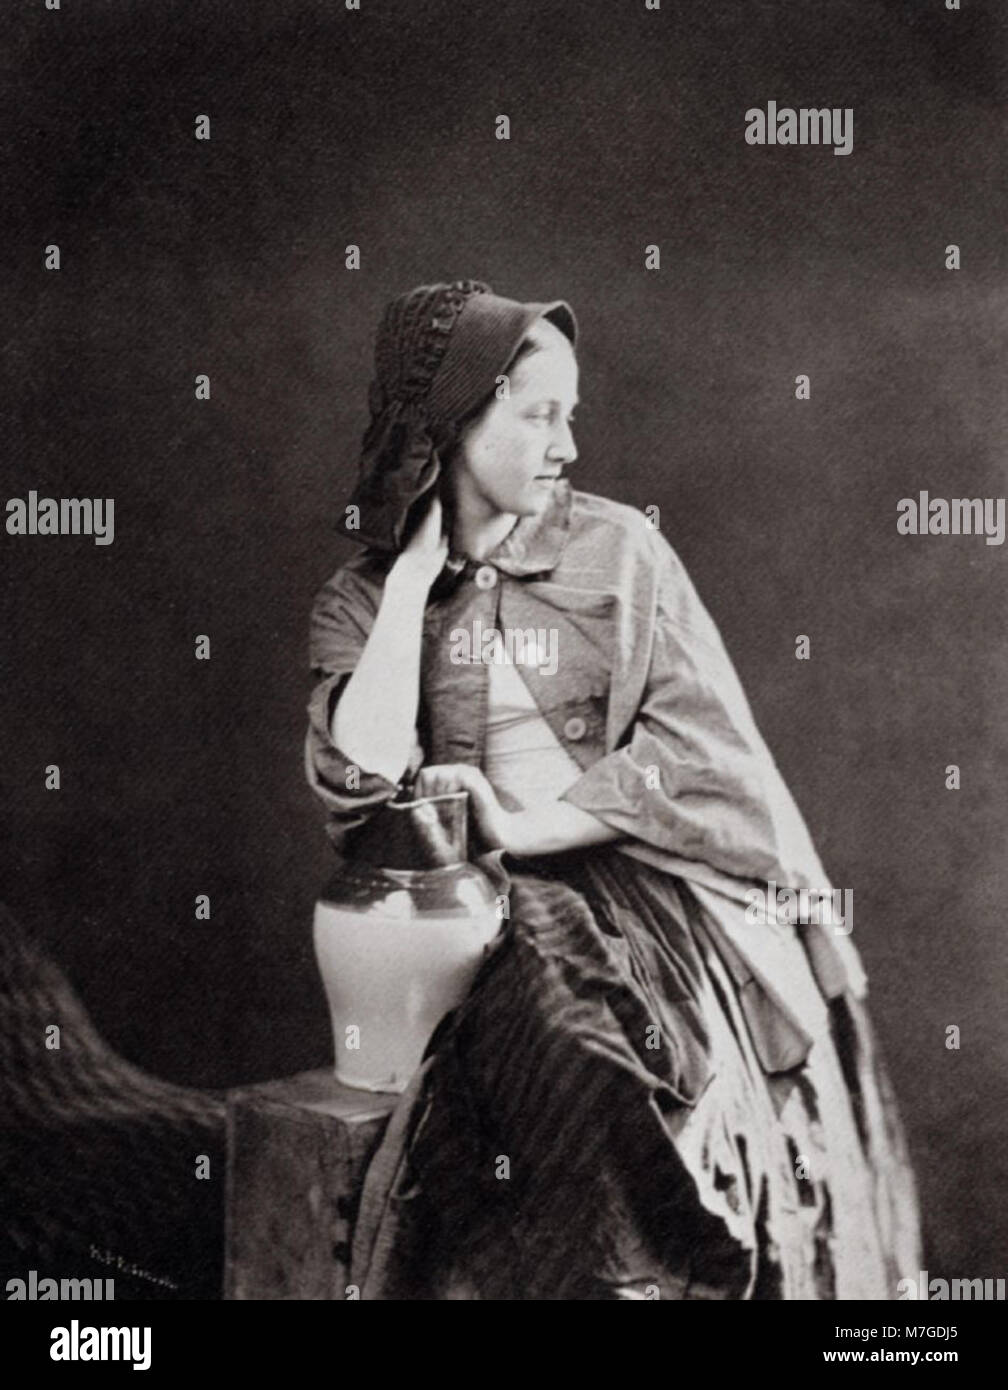 Robinson, Henry Peach - Studie einer jungen Frau mit Sonnenhaube und Wasserkrug (Zeno fotografie) Foto Stock